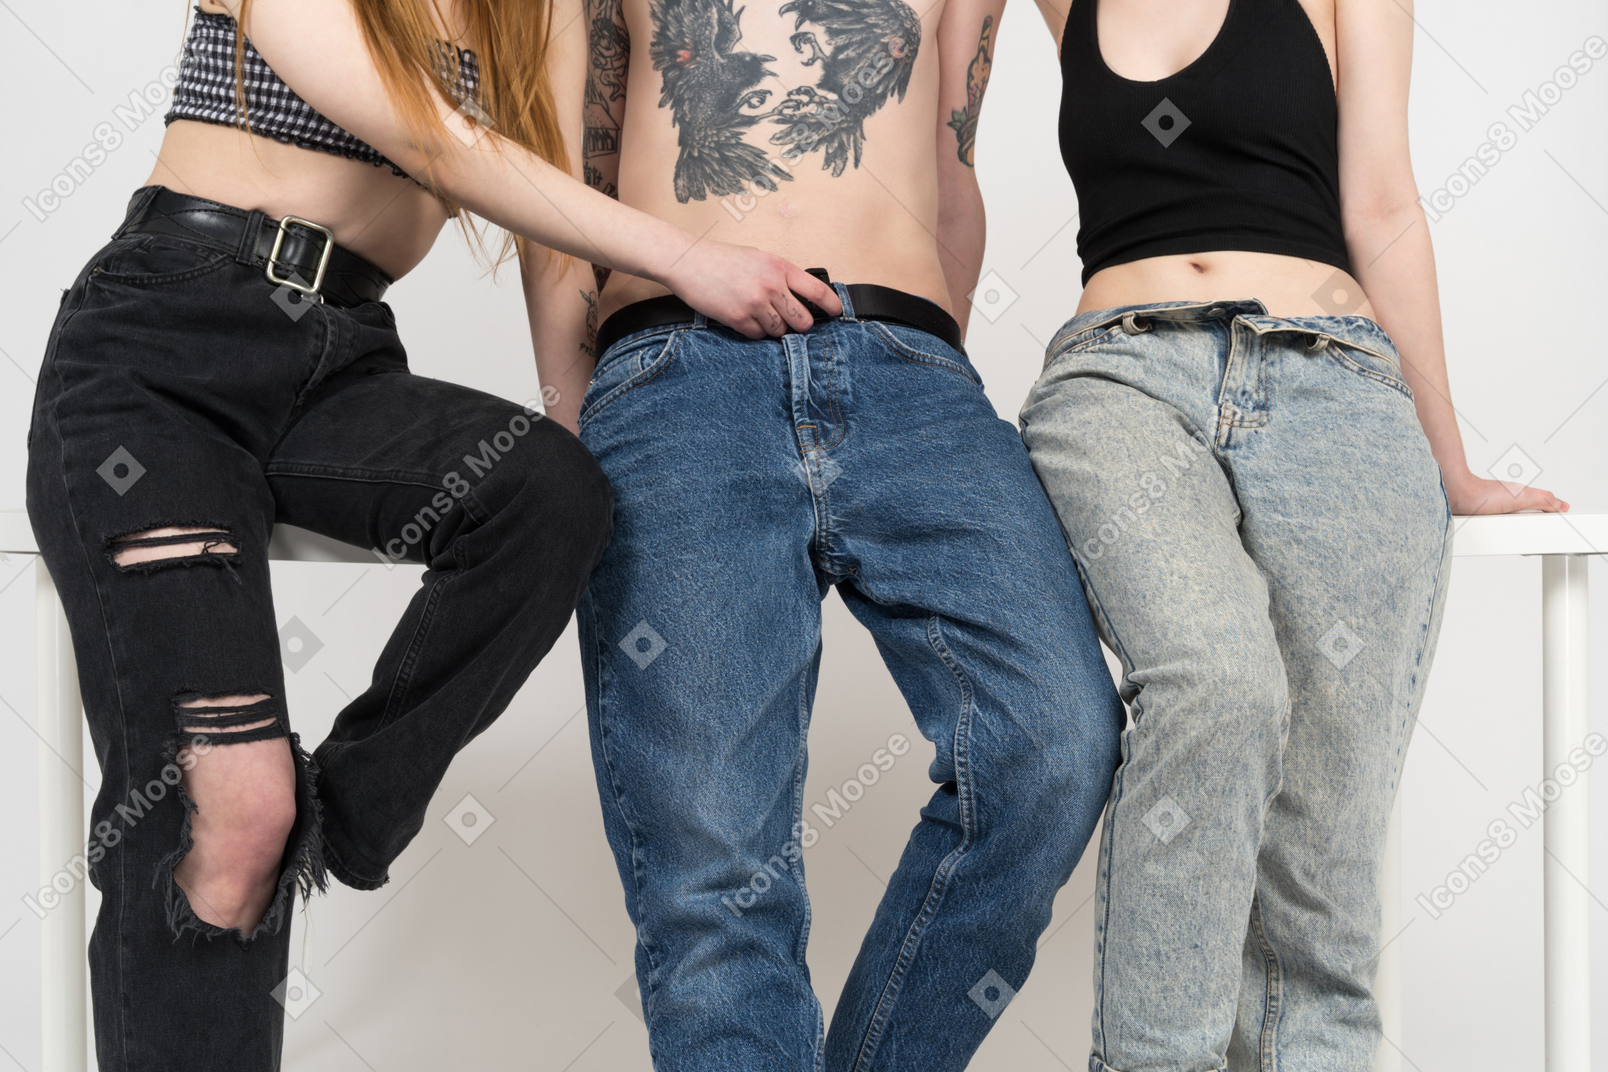 Una de las niñas desabrochando una mosca en los jeans de adolescente